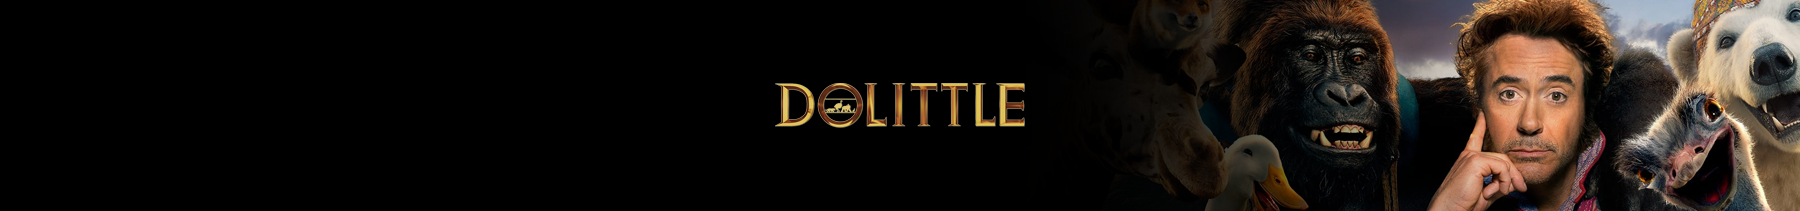 dolittle